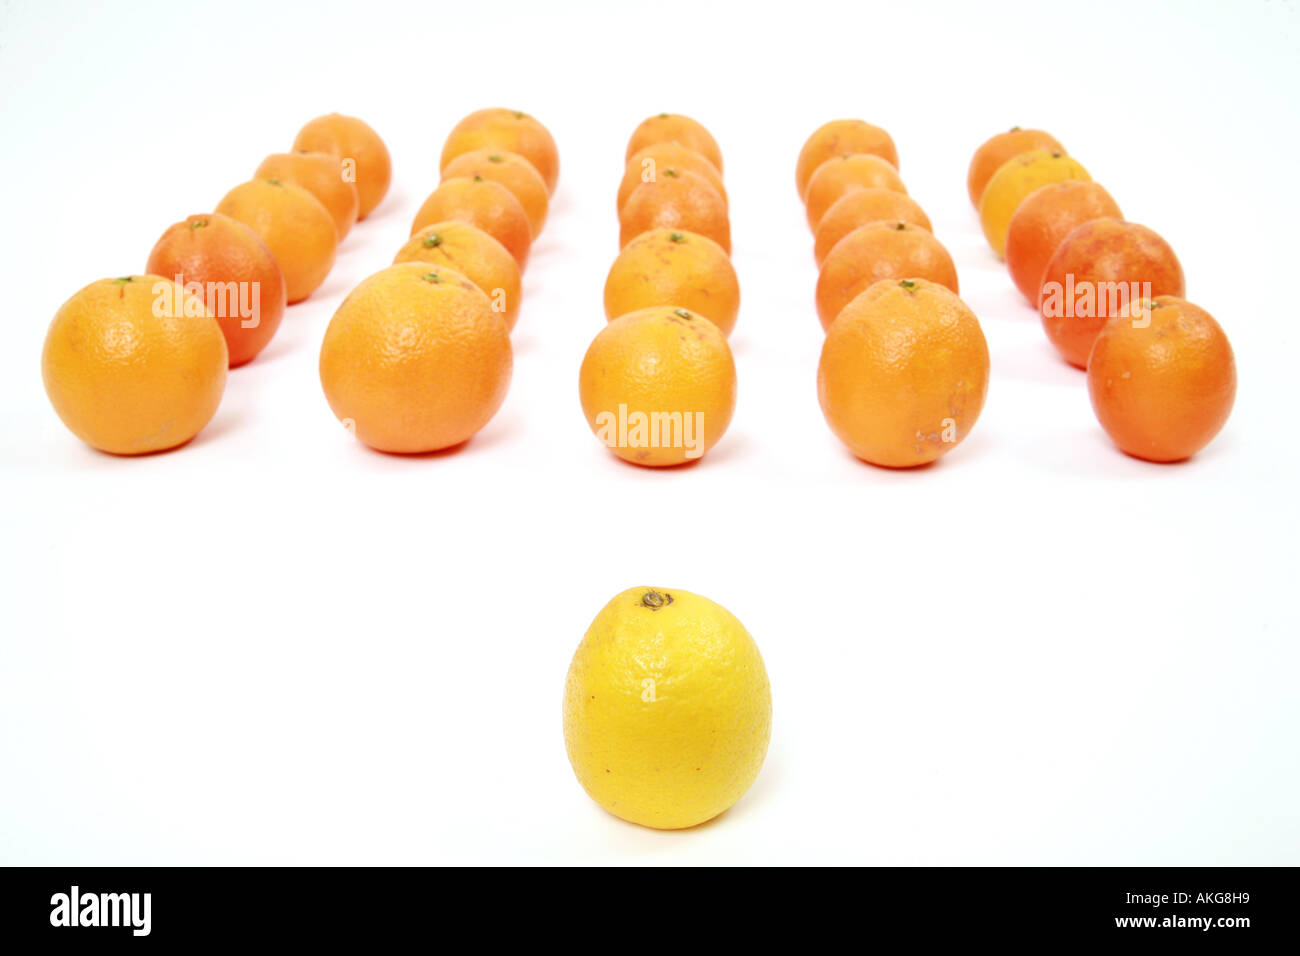 Le citron et les oranges sur un fond blanc symbolisant l'équipe leadership Banque D'Images